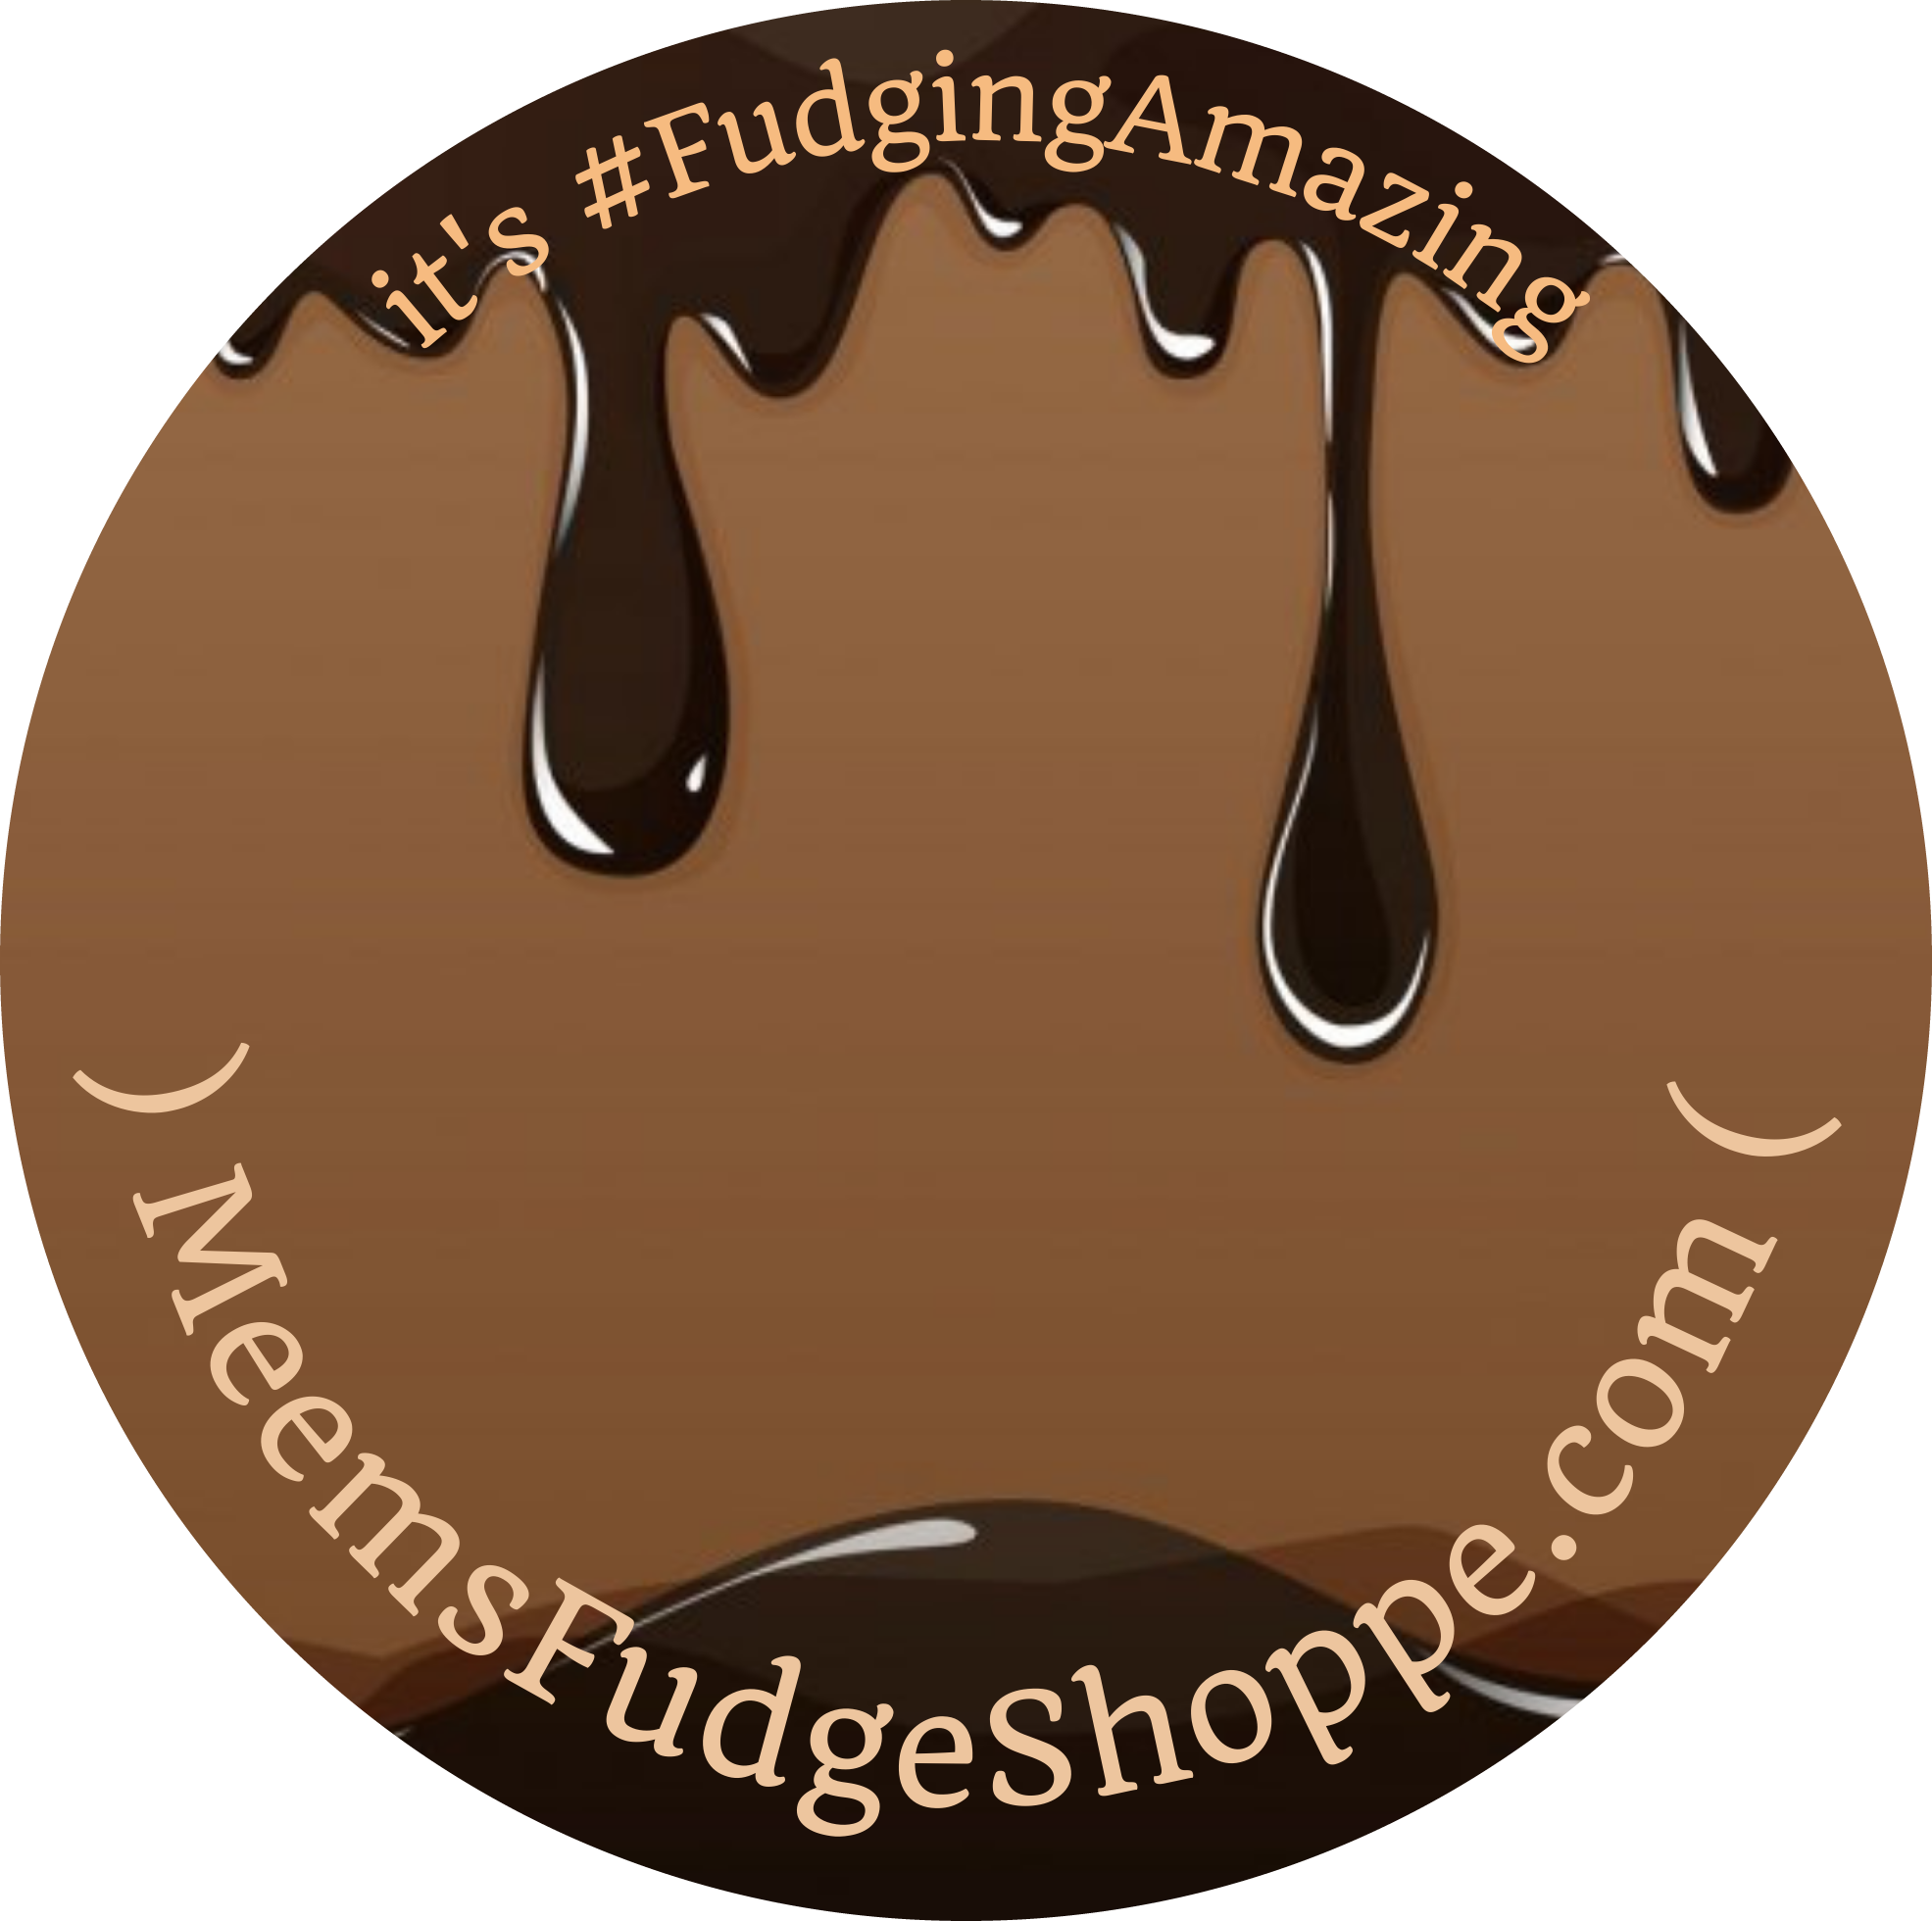 Meems Fudge Shop